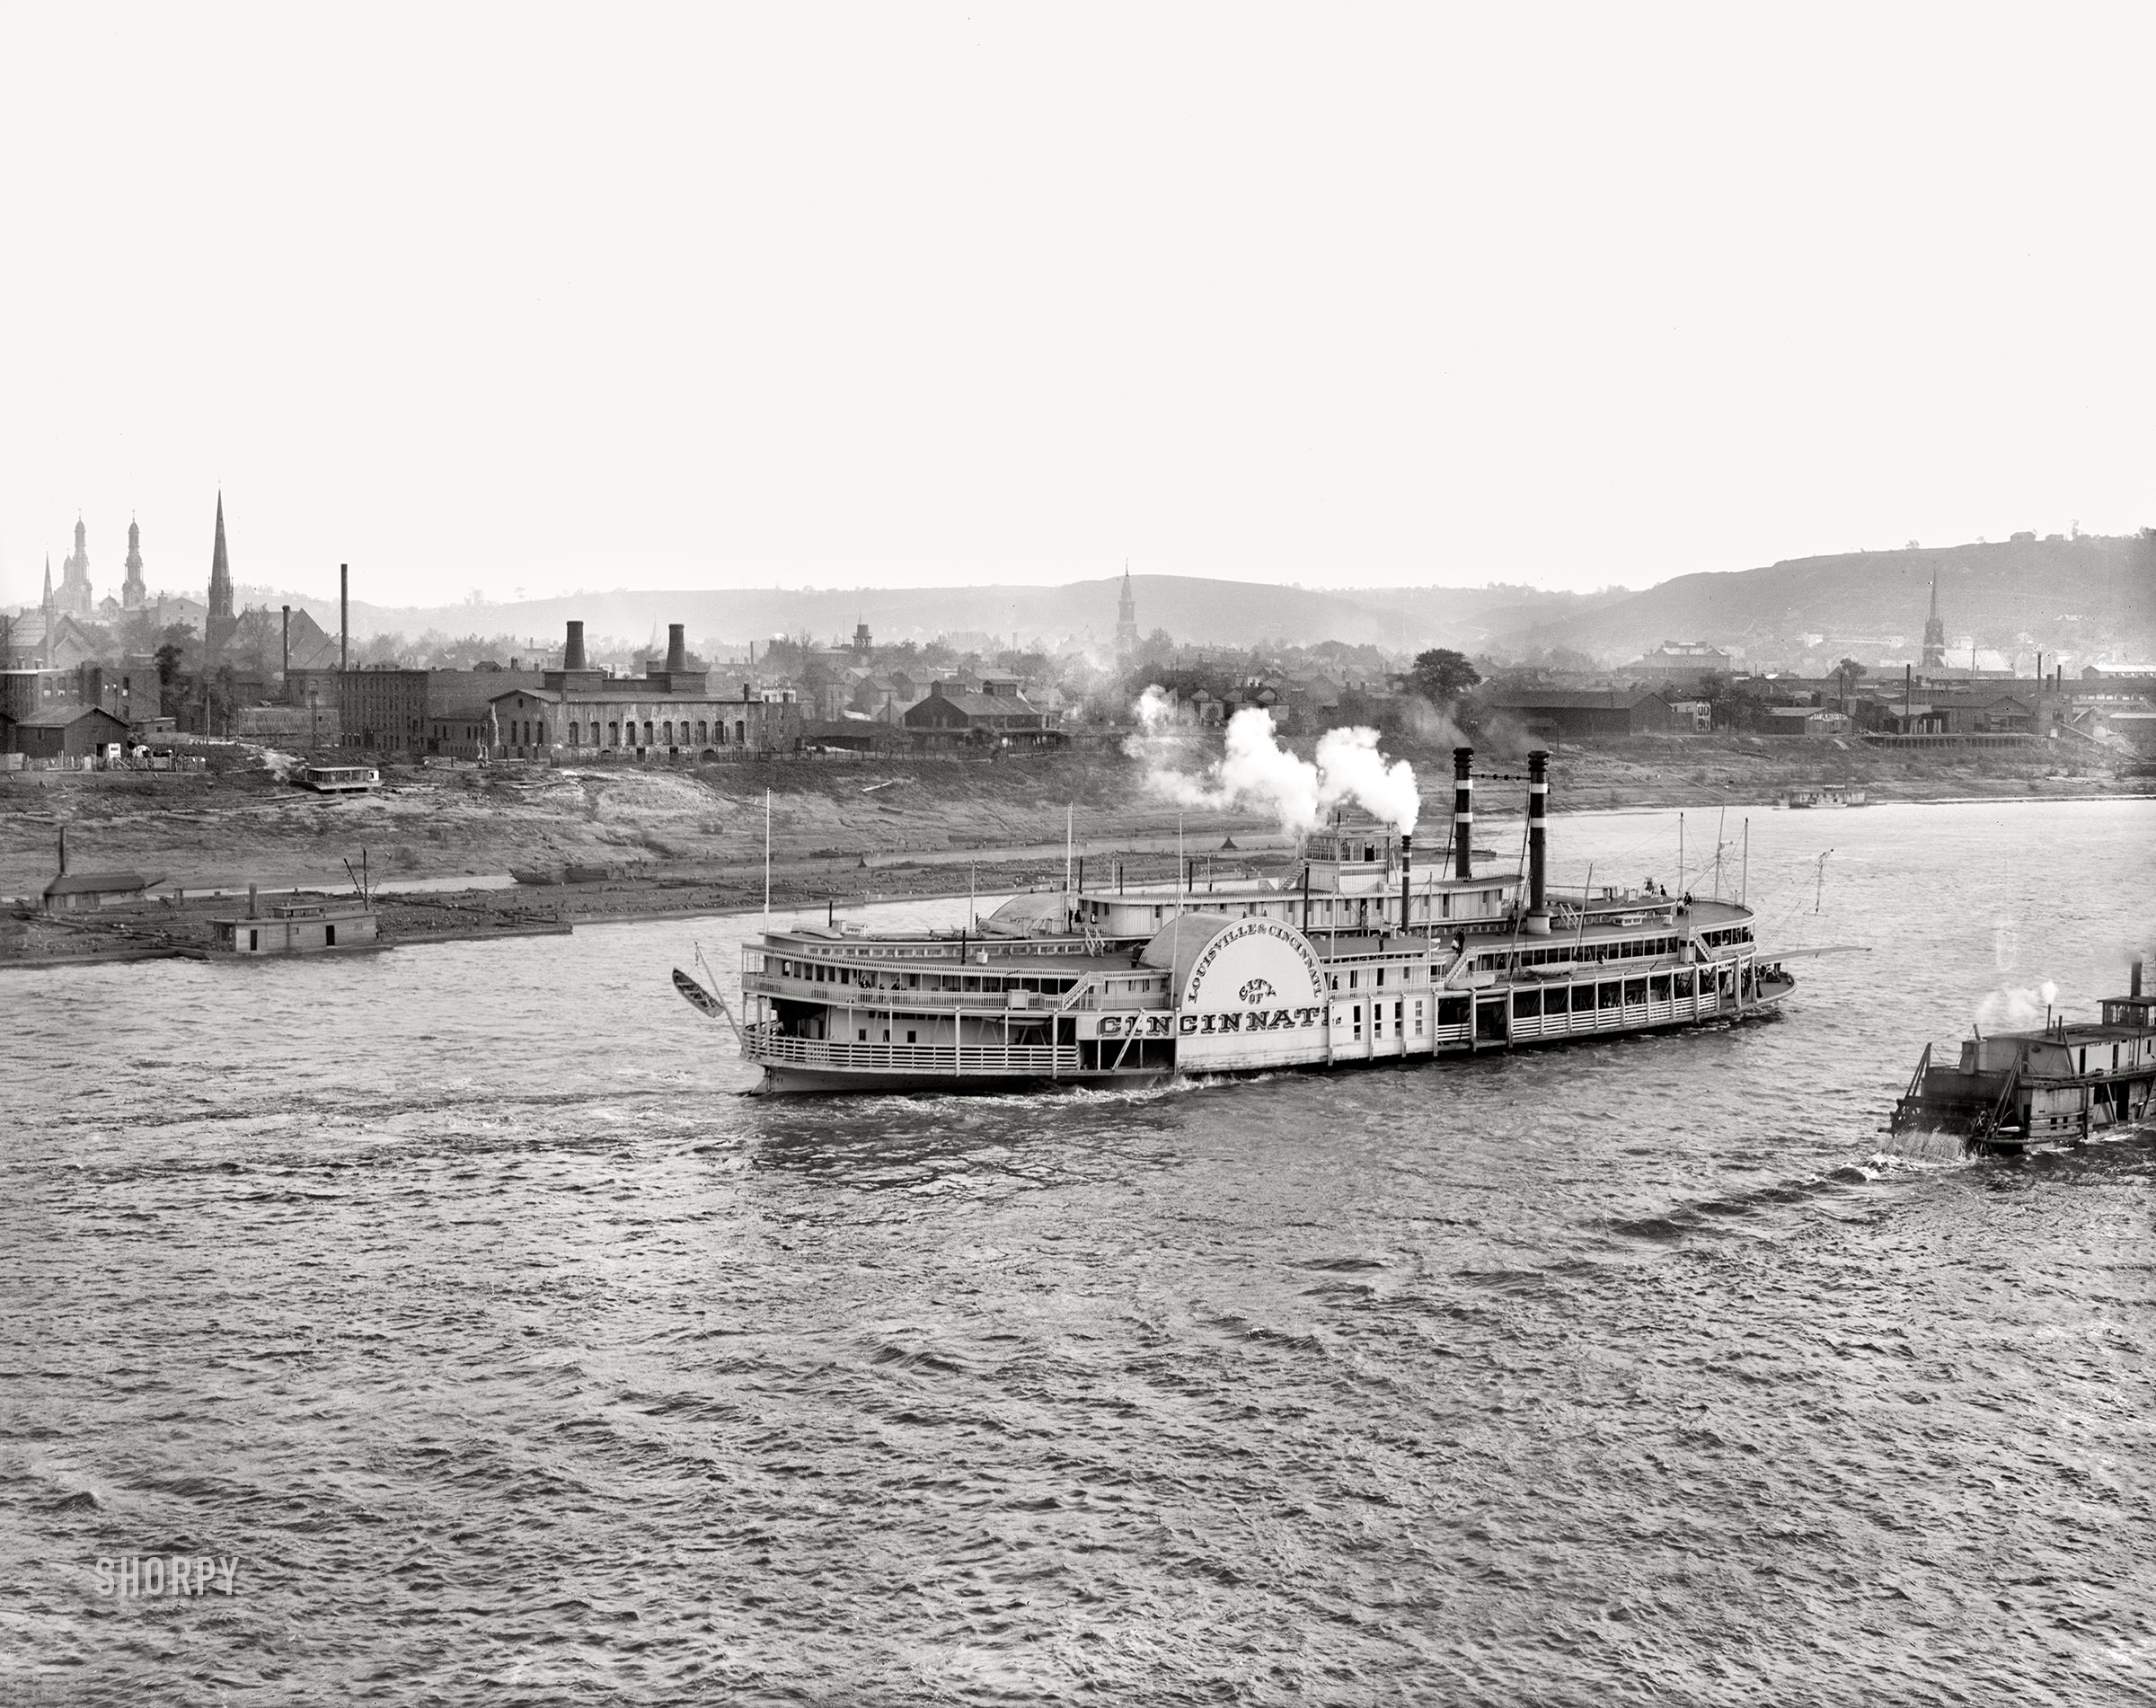 The Ohio River circa 1906. "The Cincinnati, Cincinnati, Ohio." The Louisville & Cincinnati Line sidewheeler City of Cincinnati. 8x10 inch dry plate glass negative. View full size.